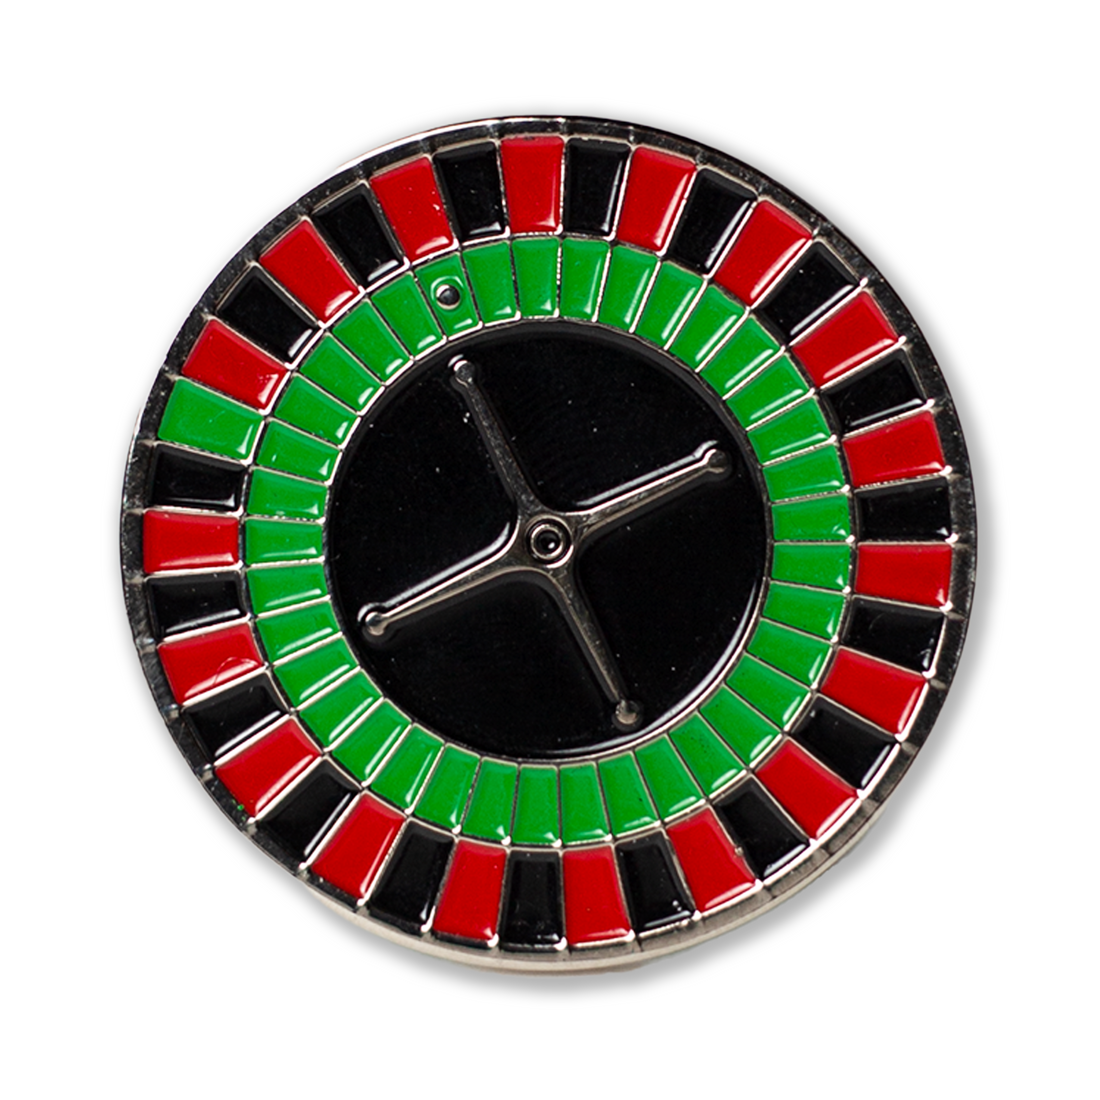 Roulette Wheel Ball Marker - 2putt